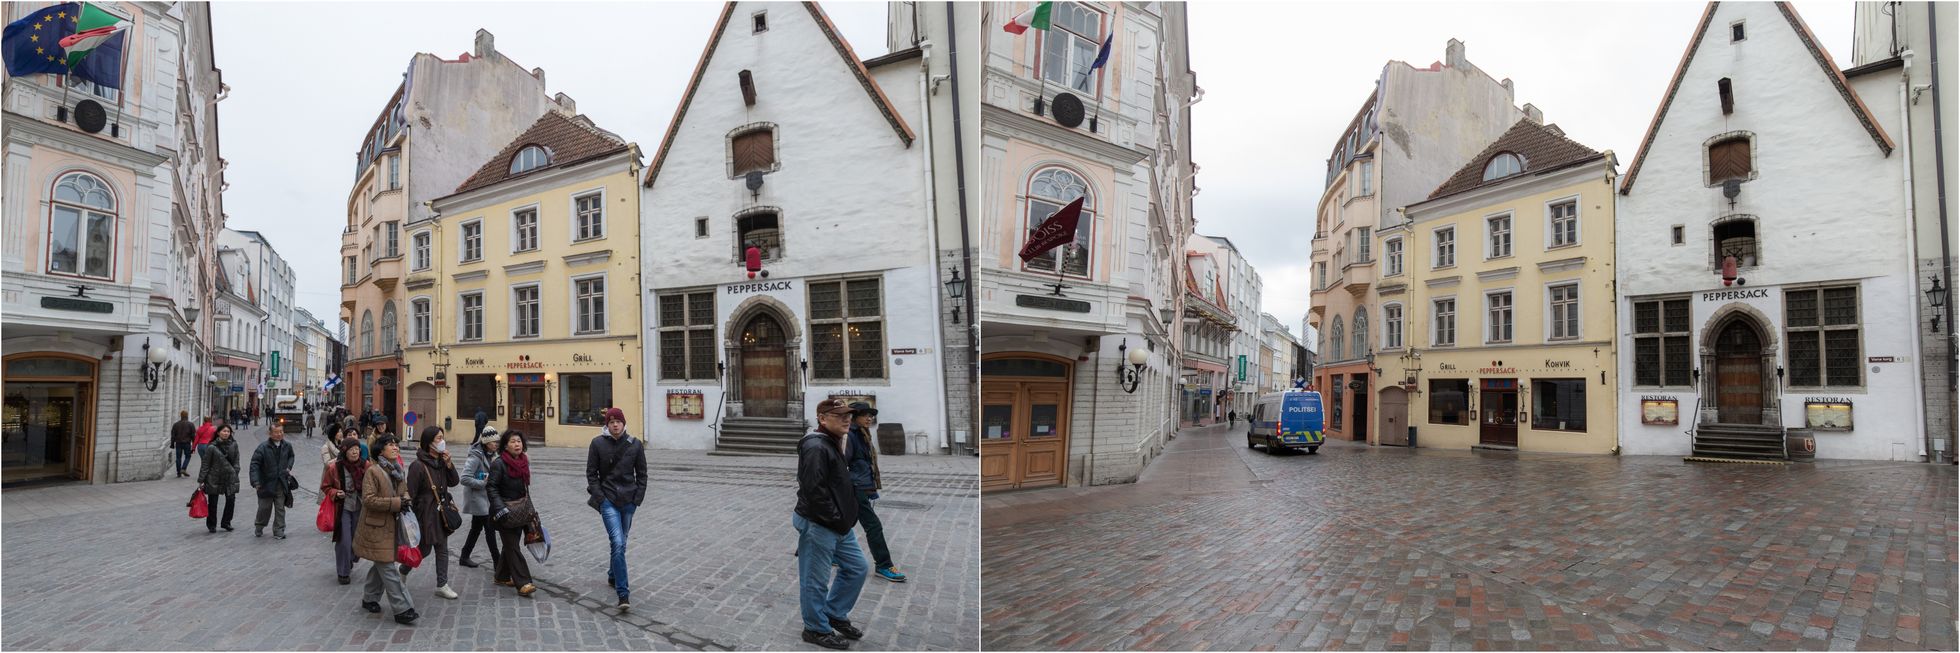 Koroonaviirus: Tallinn enne ja nüüd